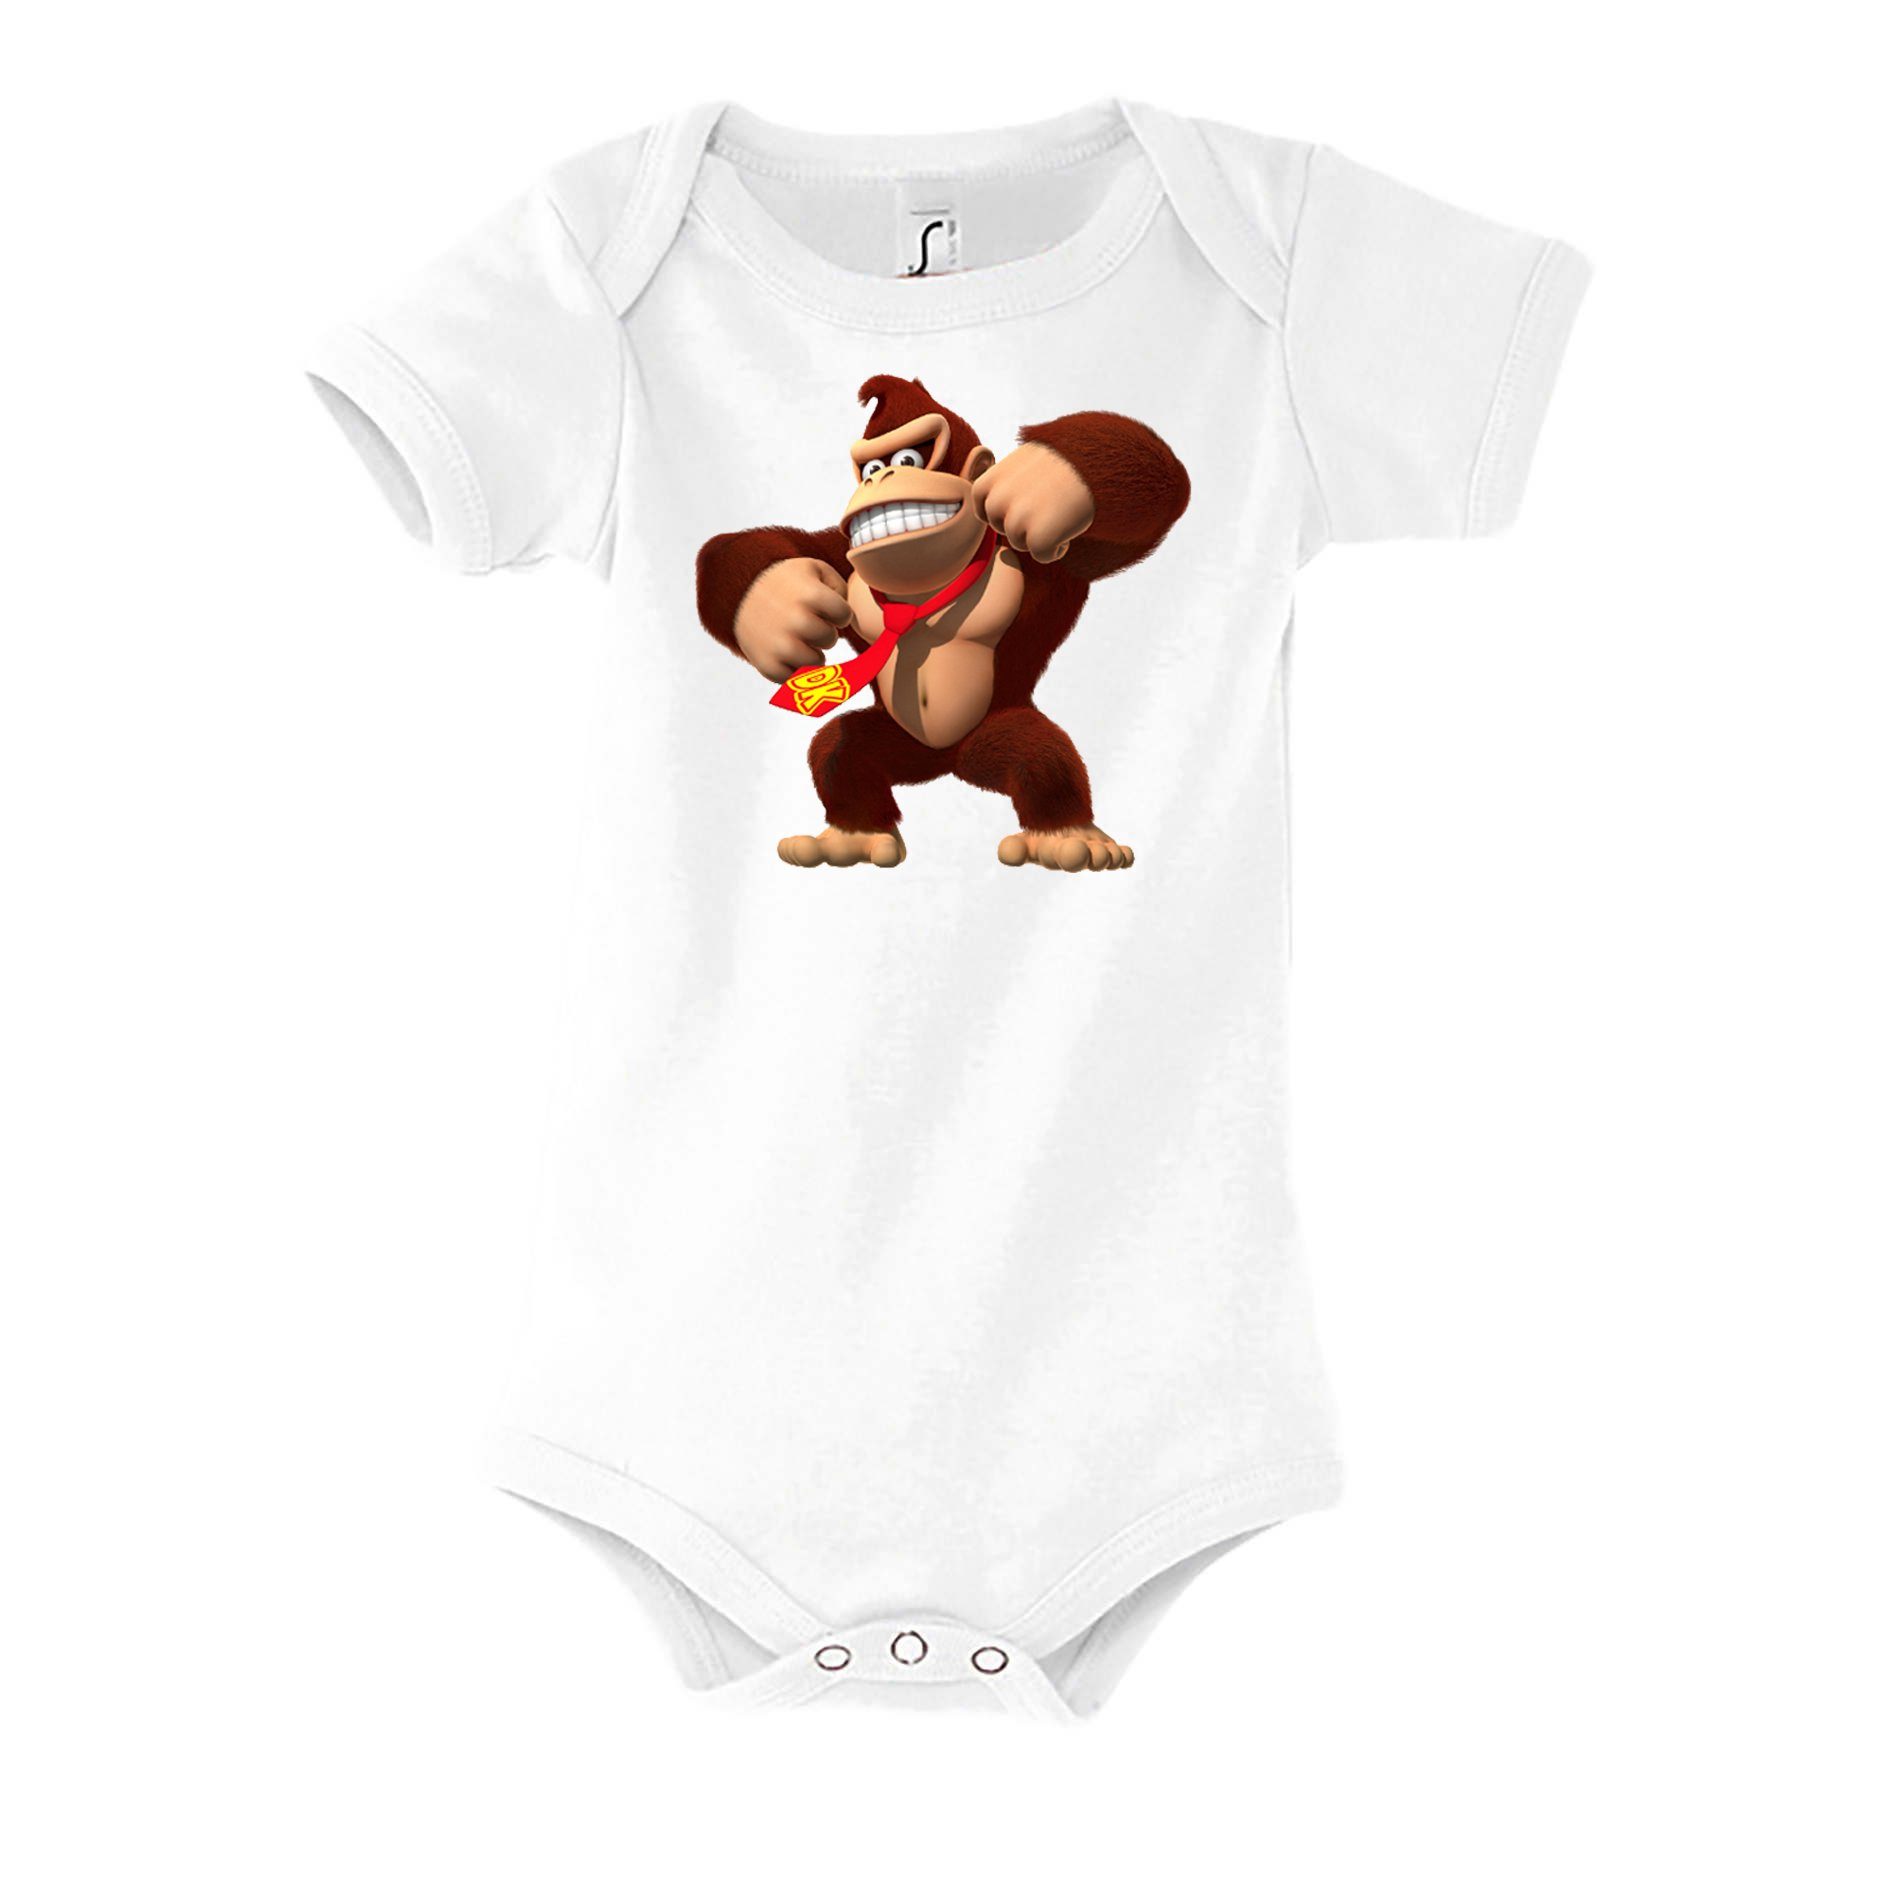 Blondie & Brownie Strampler Kinder Baby Donkey Kong Gorilla Affe Nintendo mit Druckknopf Weiß